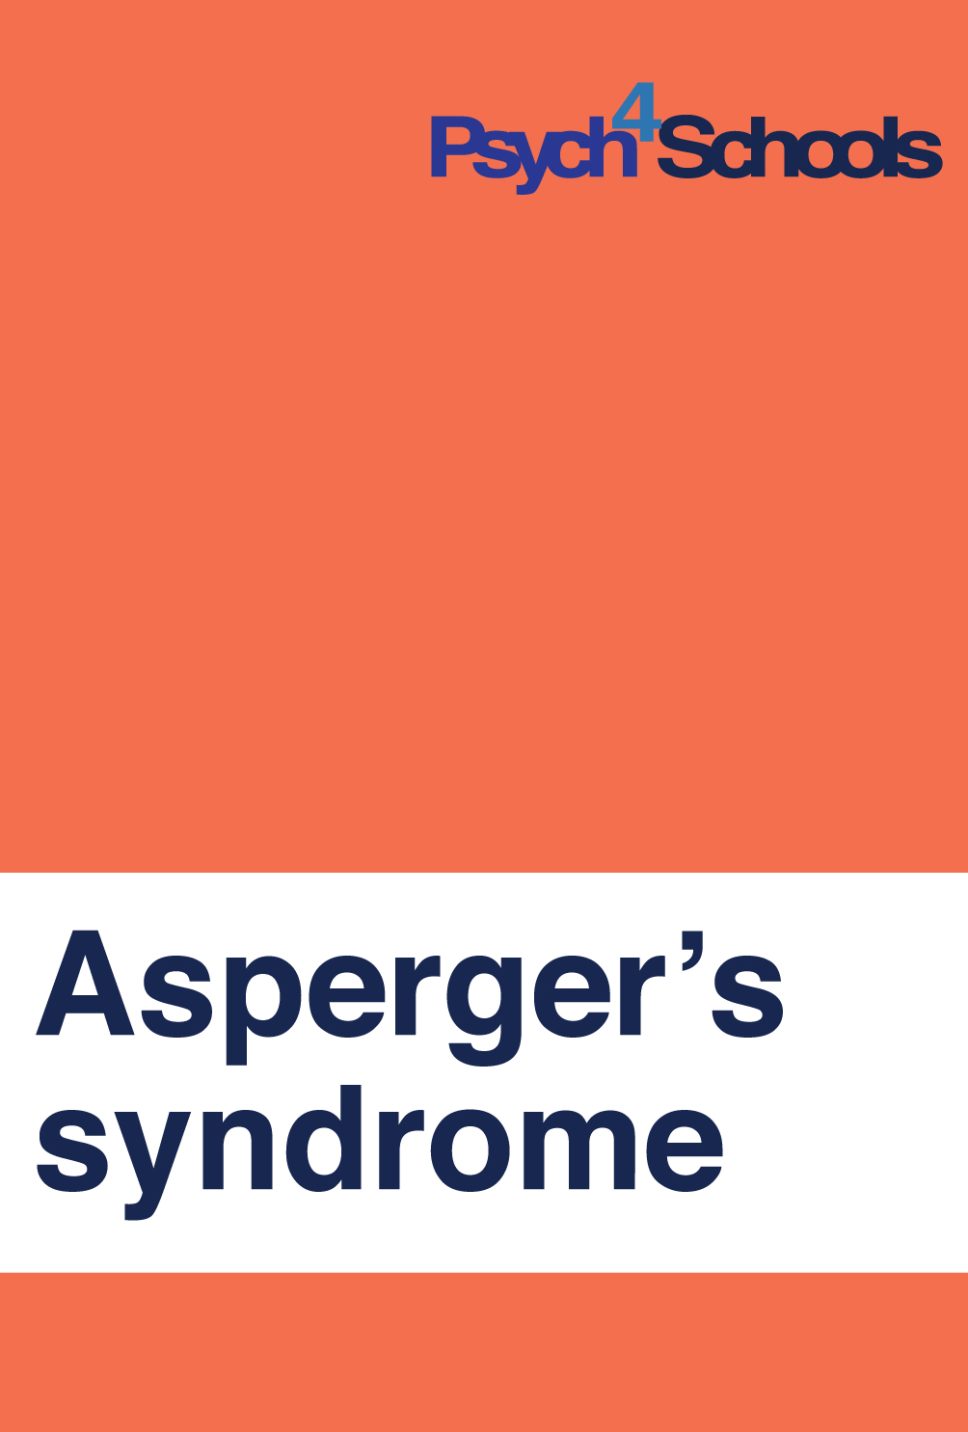 Aspergers homework help